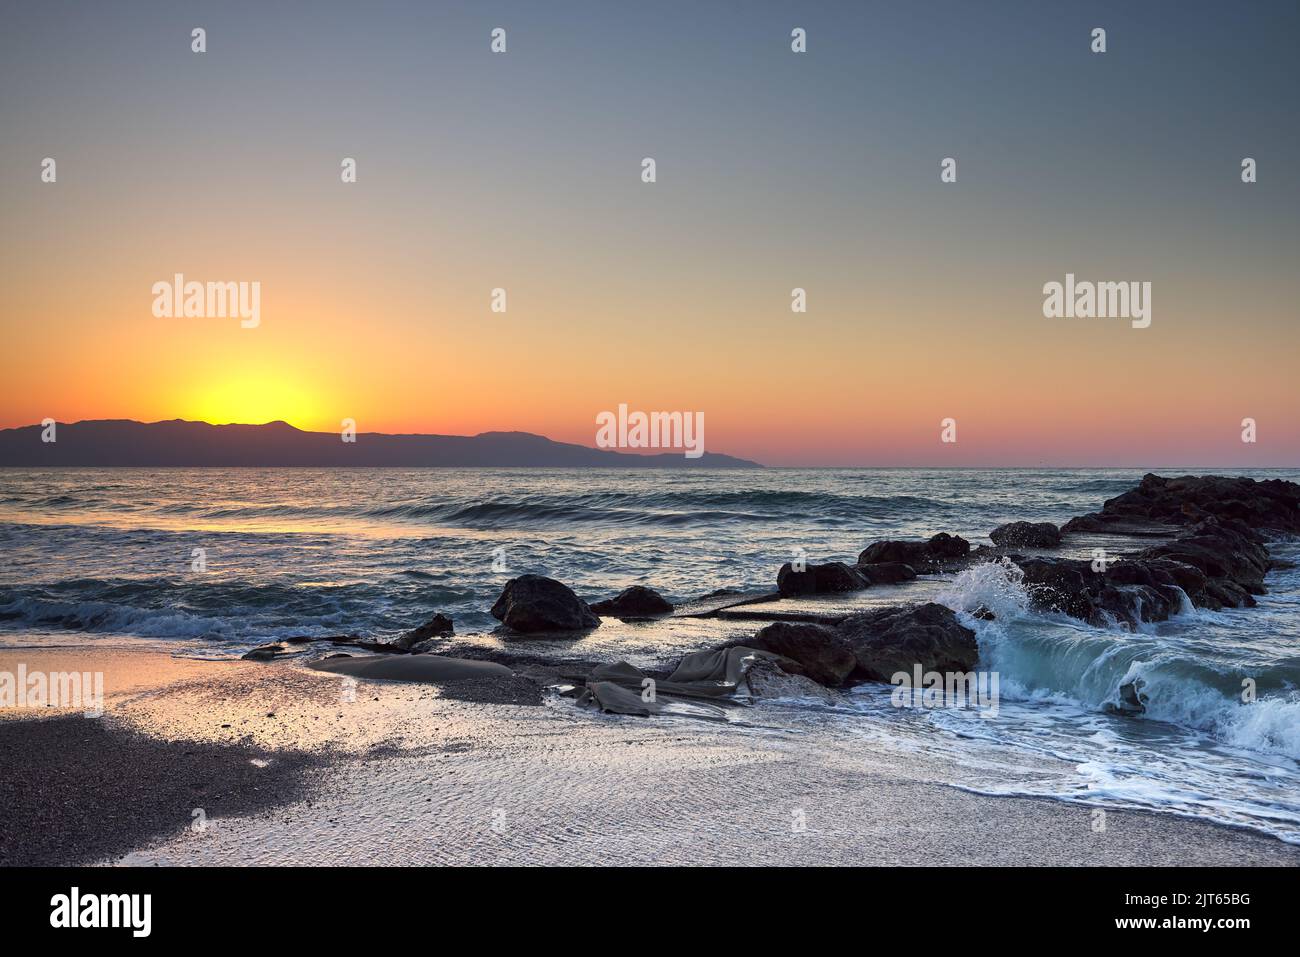 Wunderschönes Meer und Wellen, die gegen einen Steg oder Pier krachen, um die Sonnenuntergänge zu genießen Stockfoto